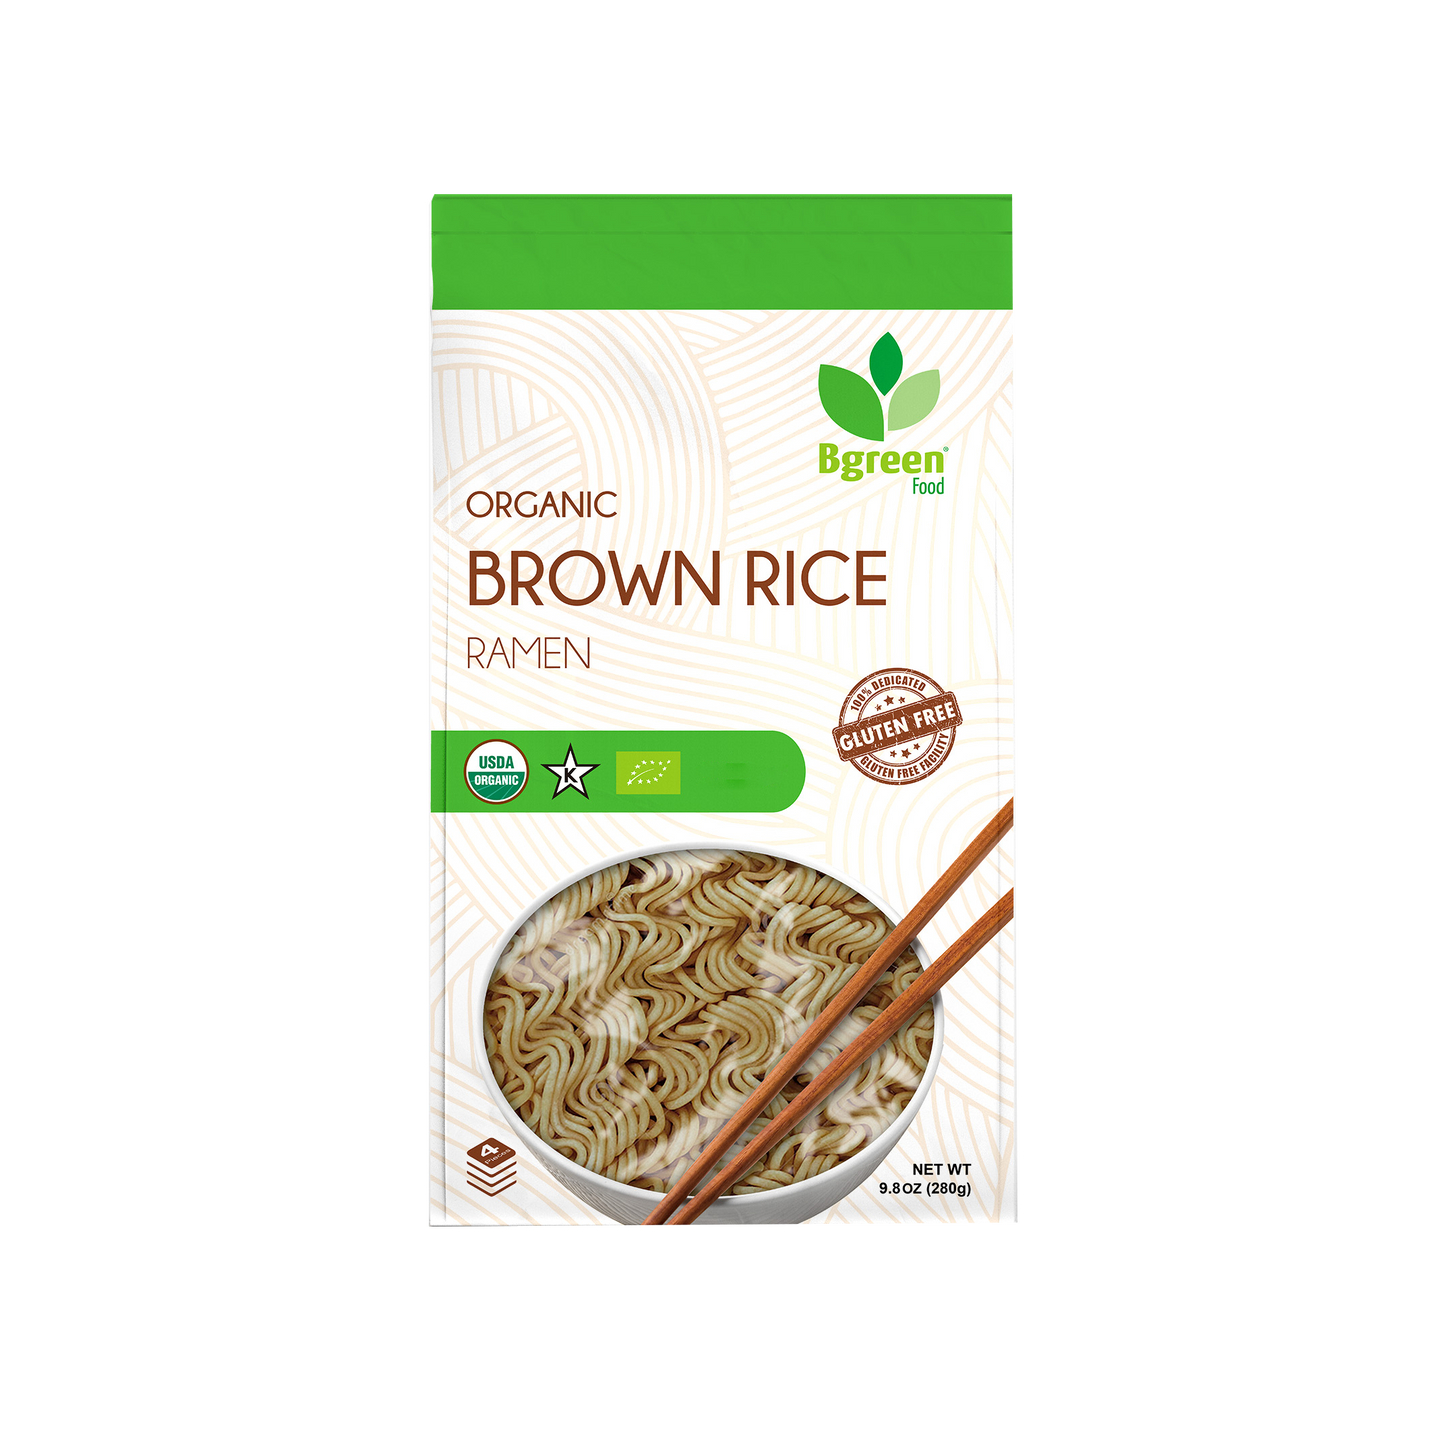 Bgreen Organic Brown Rice Ramen 有機糙米拉麵